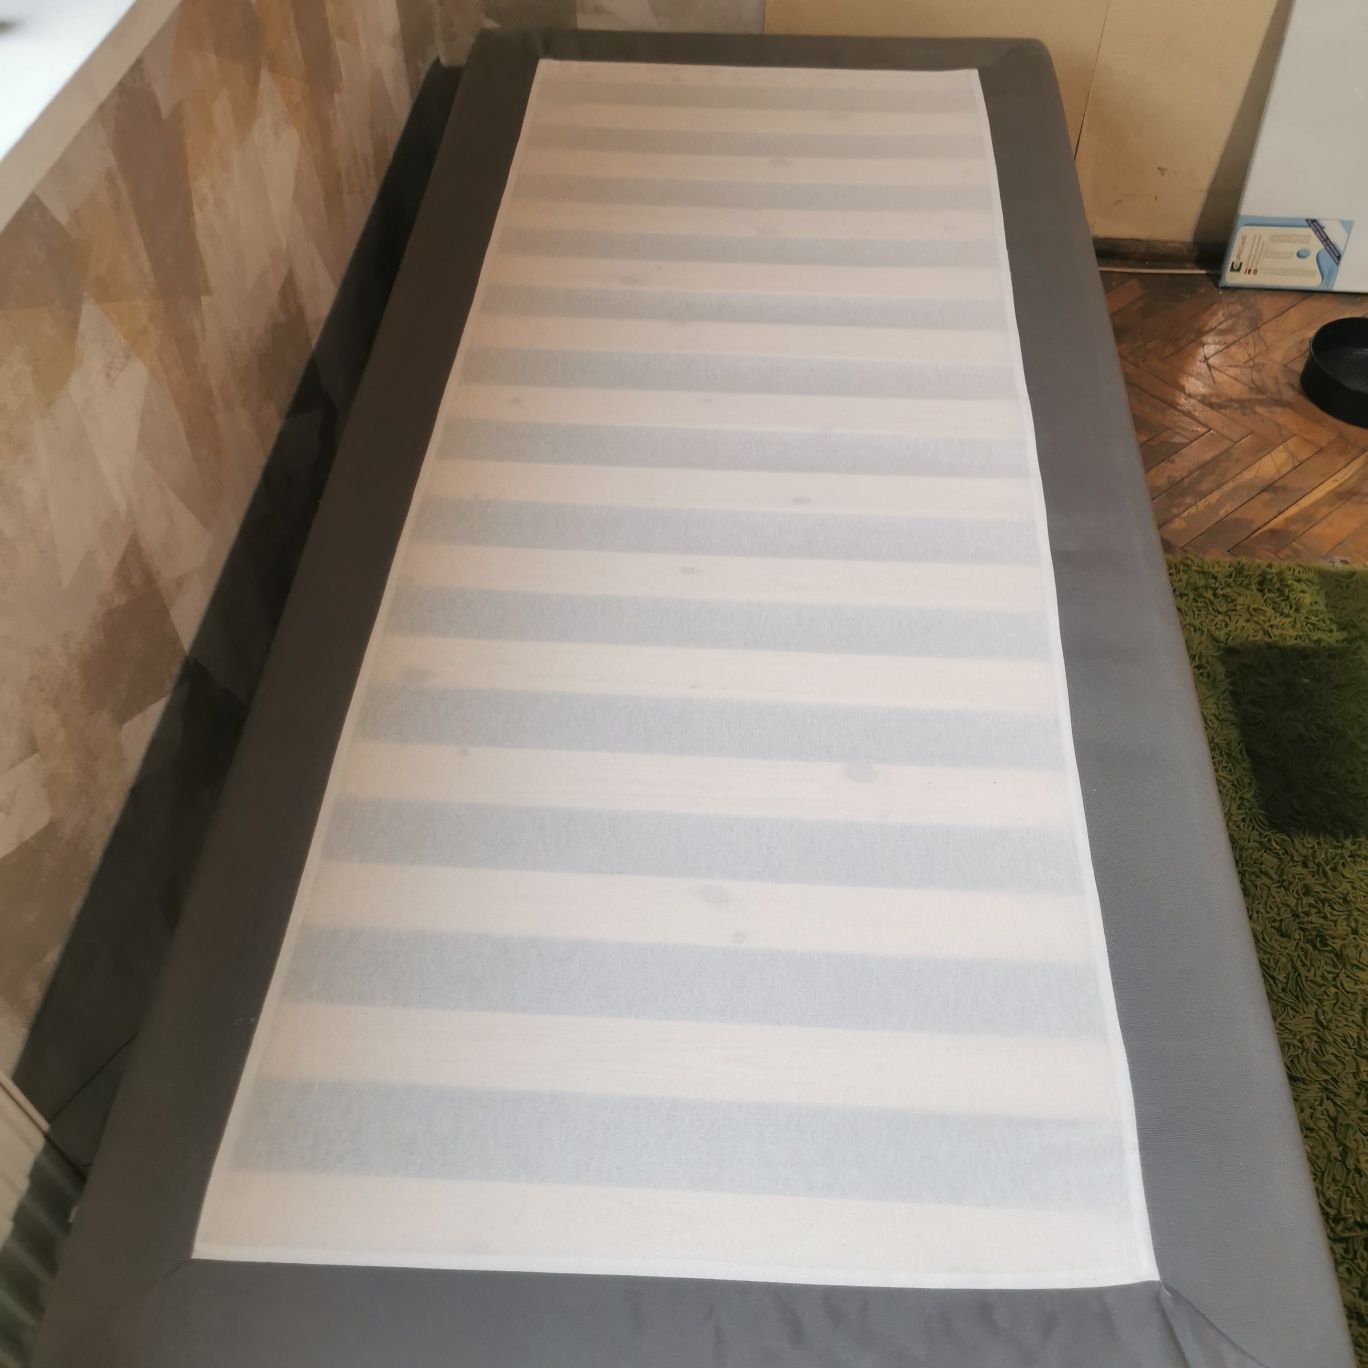 Łóżko pojedyncze Ikea